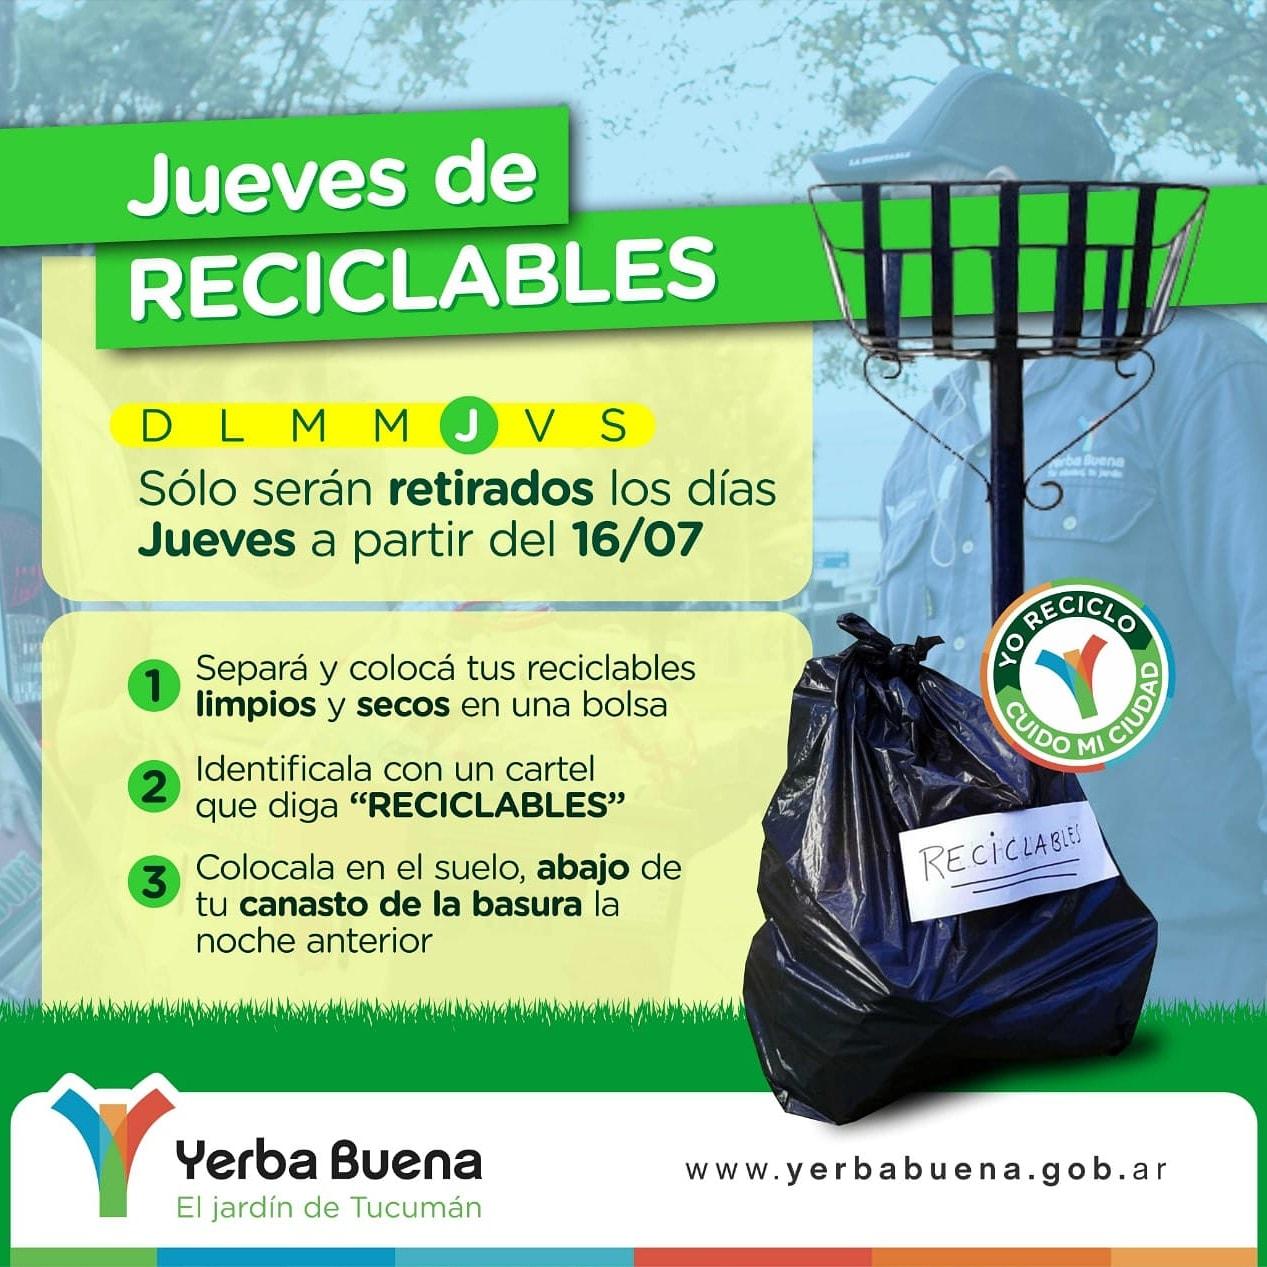 LA CAMPAÑA. El municipio compartió en las redes las pautas del programa de reciclaje.